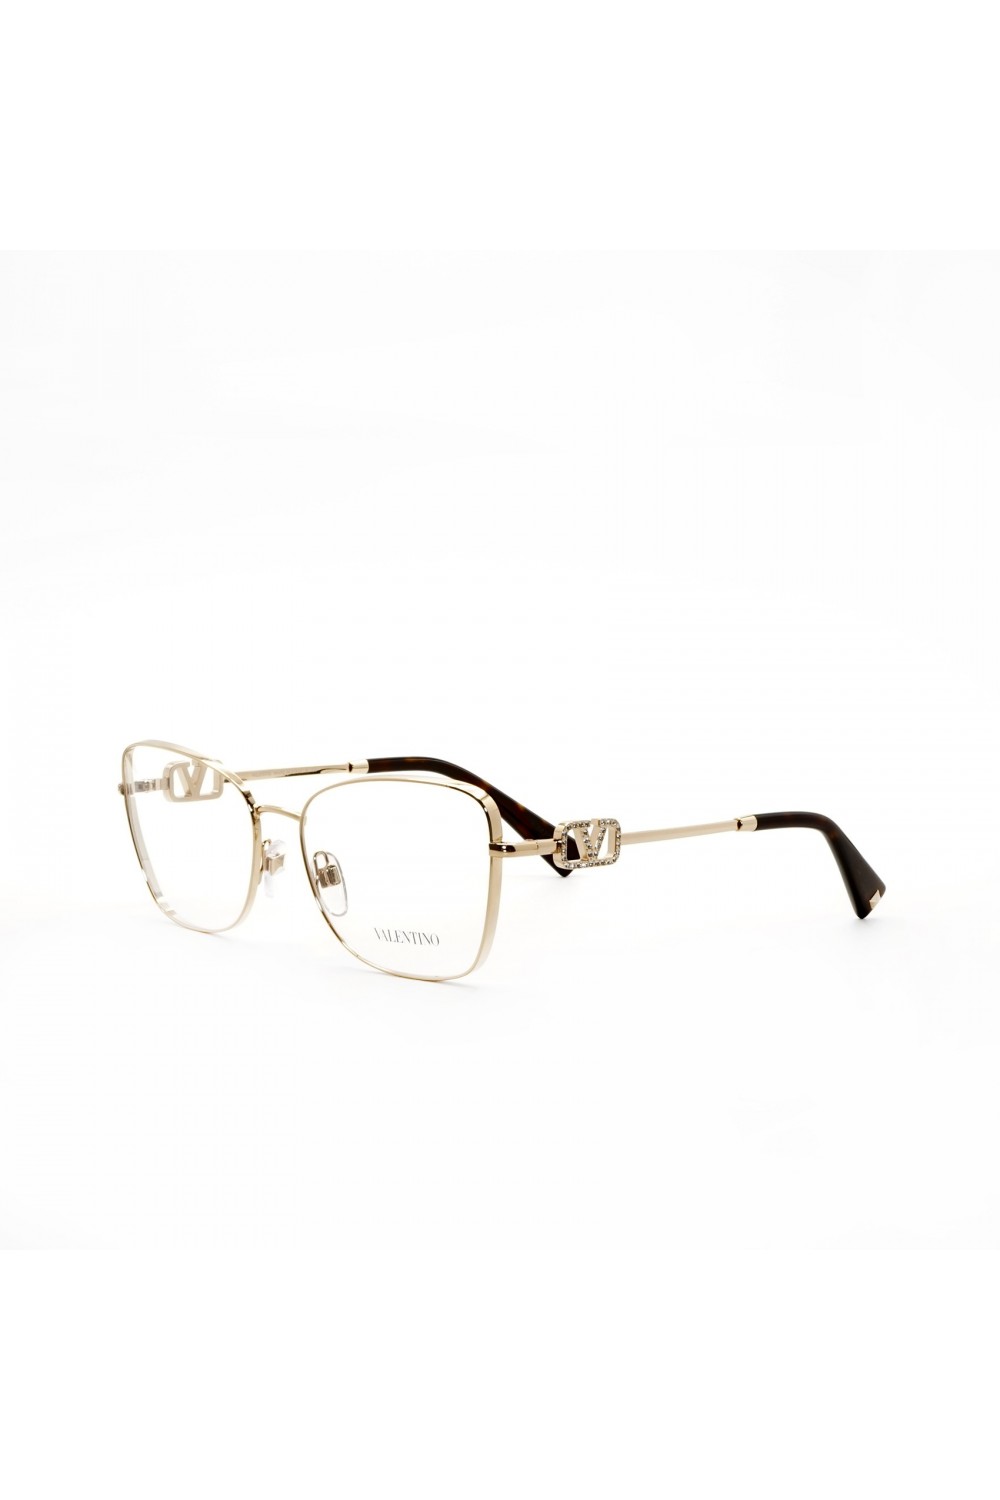 Valentino - Occhiali da vista in metallo squadrati per donna oro - VA1019 3003